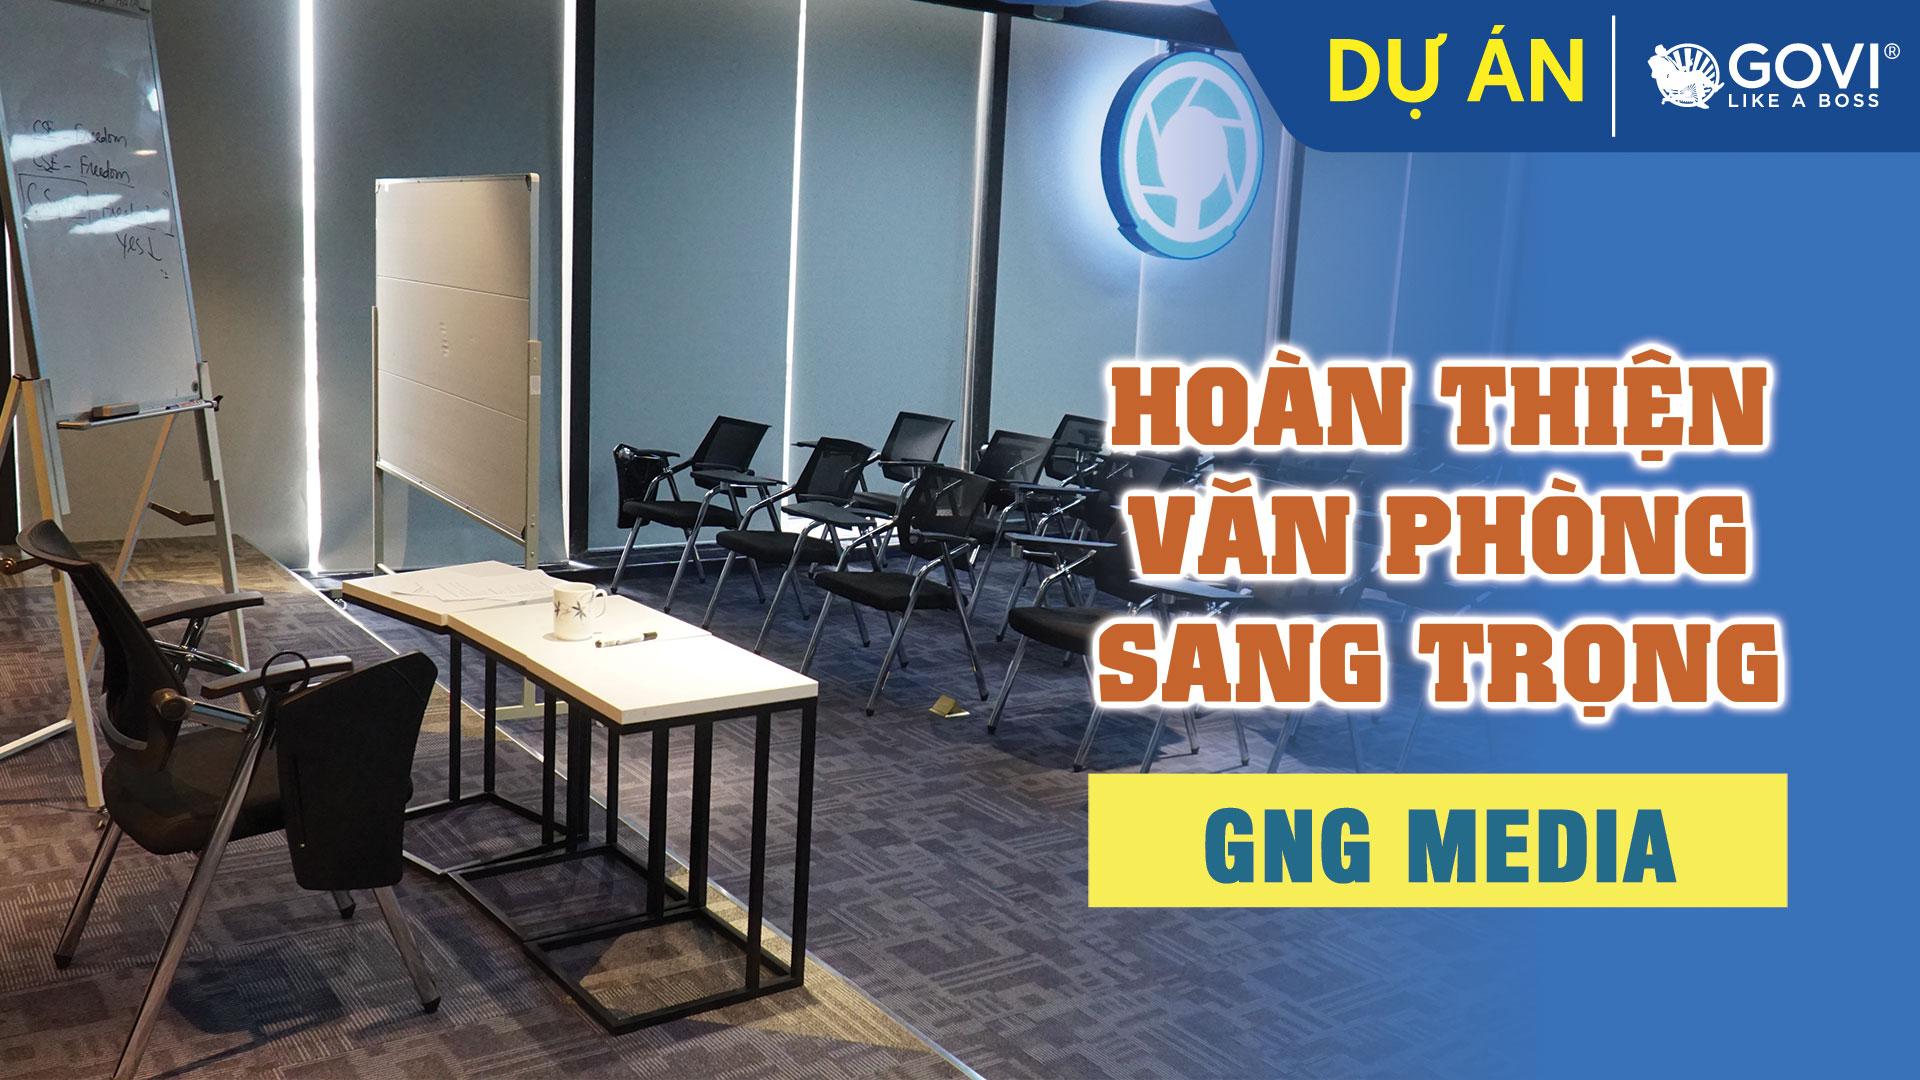 Dự Án GNG Media – Cho Không Gian Văn Phòng Sang Trọng, Hiện Đại